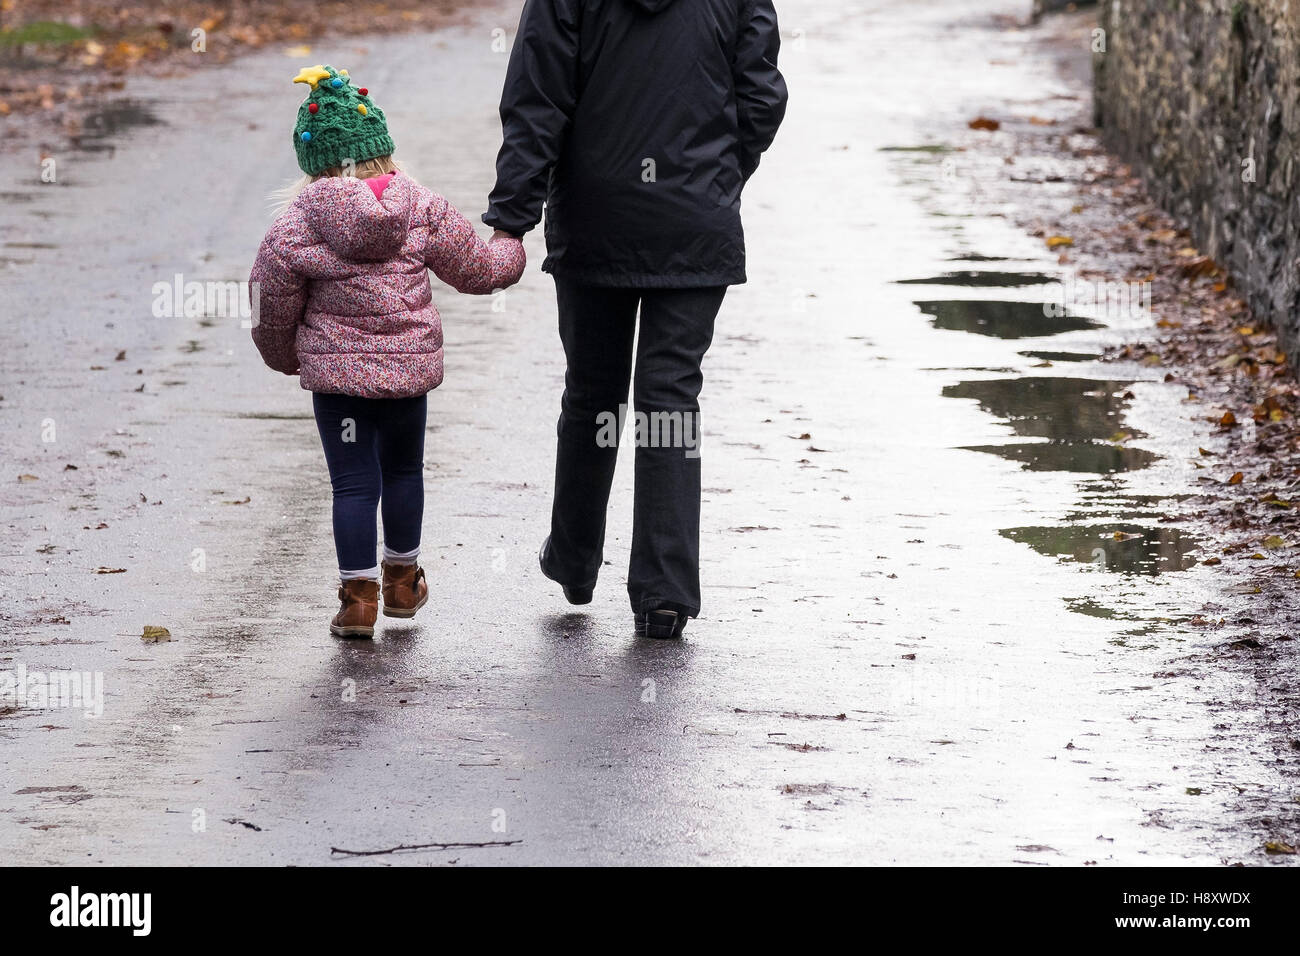 Eine Straße hinunter ein Kind und ein Erwachsener, hand in hand gehen. Stockfoto